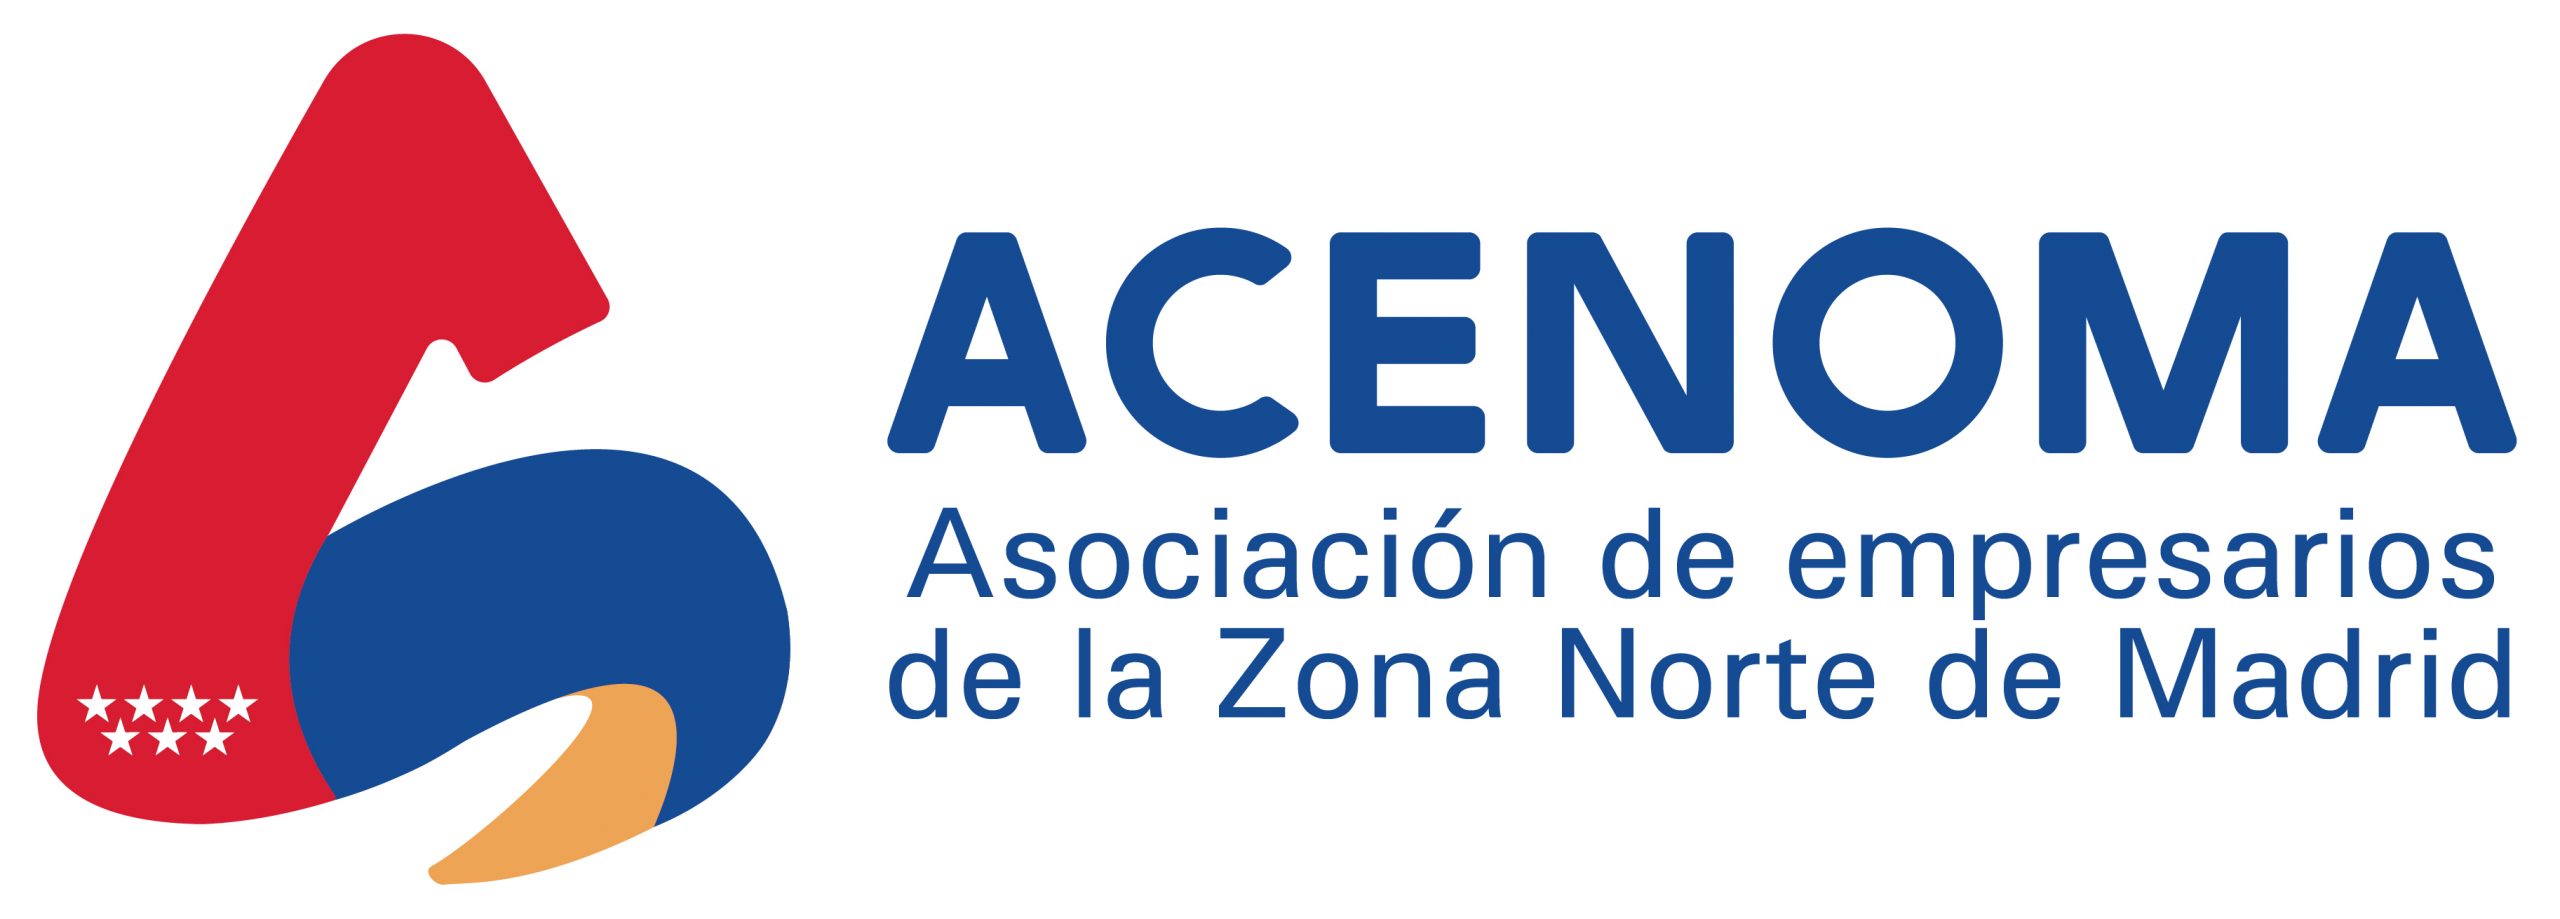 Logo ACENOMA horizontal